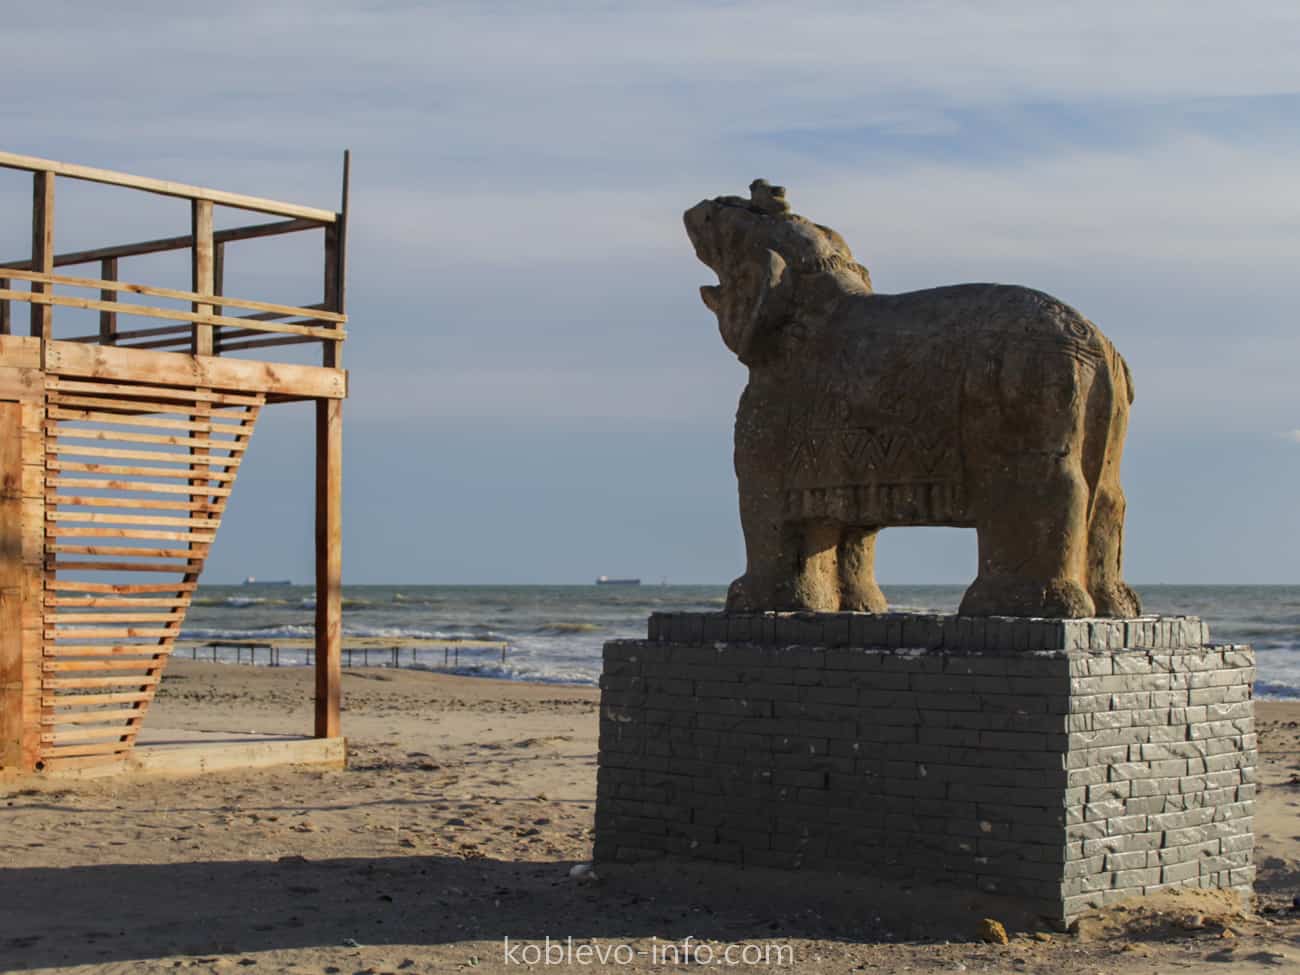 На фото изображен символ пляжа Коблево зимой